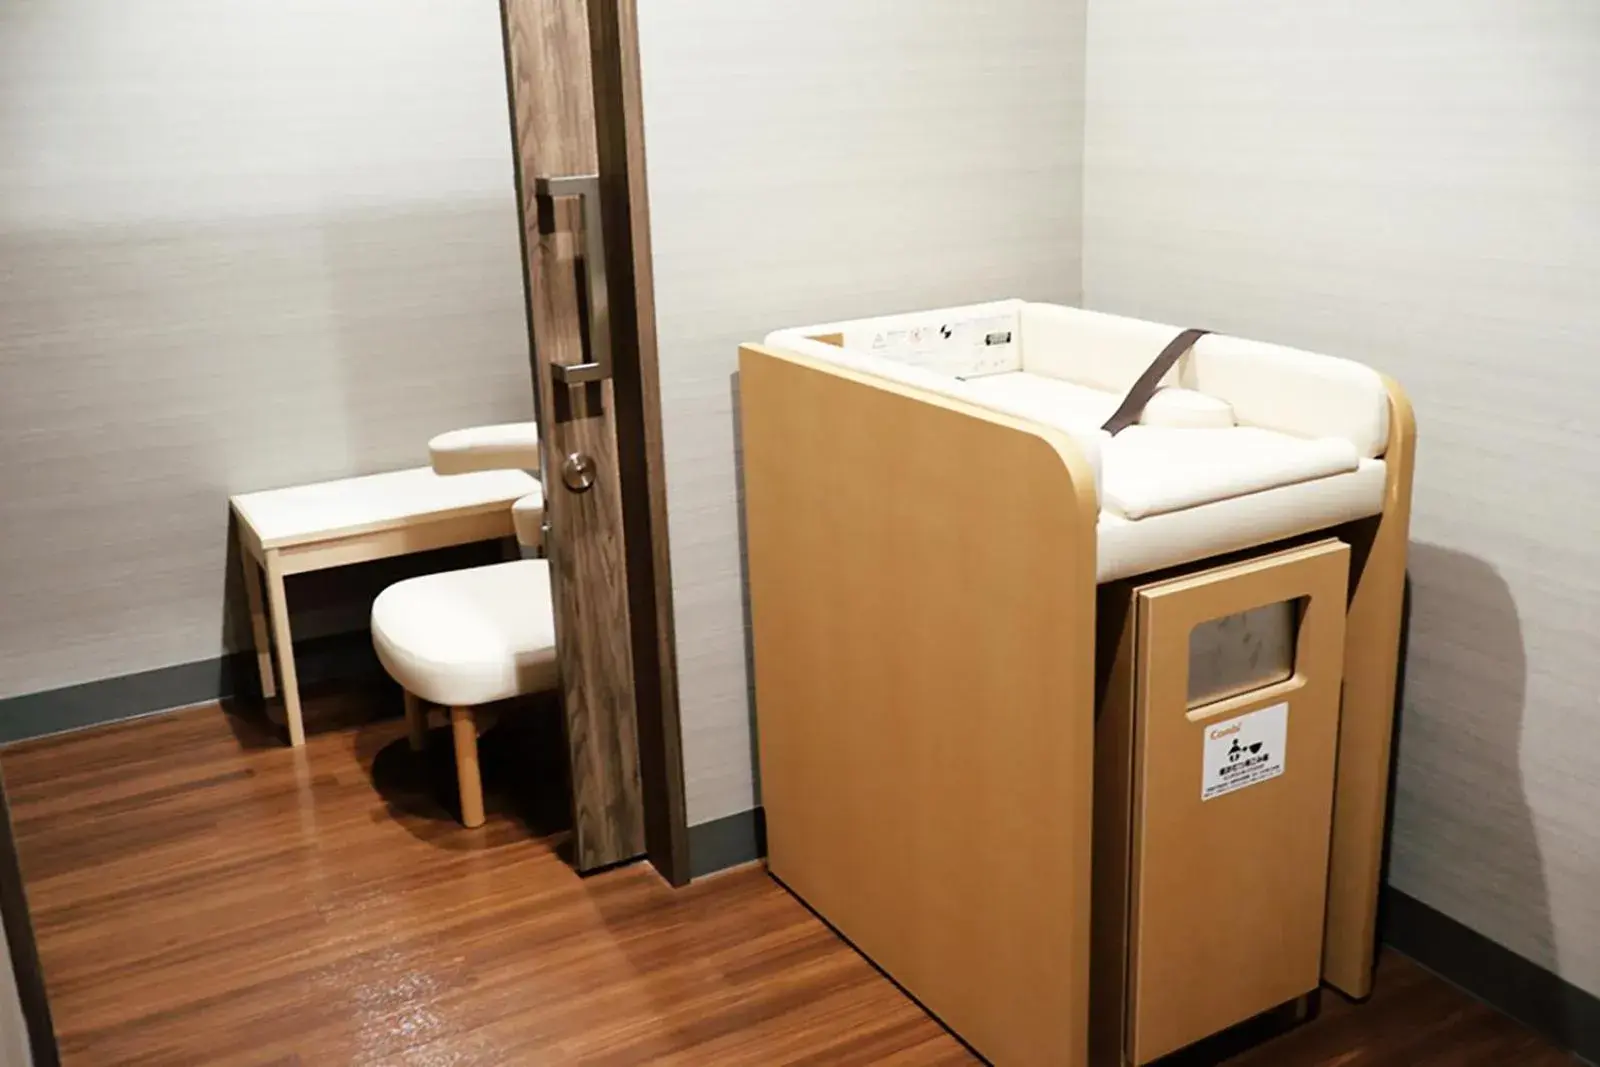 Area and facilities, Bathroom in Shiba Park Hotel